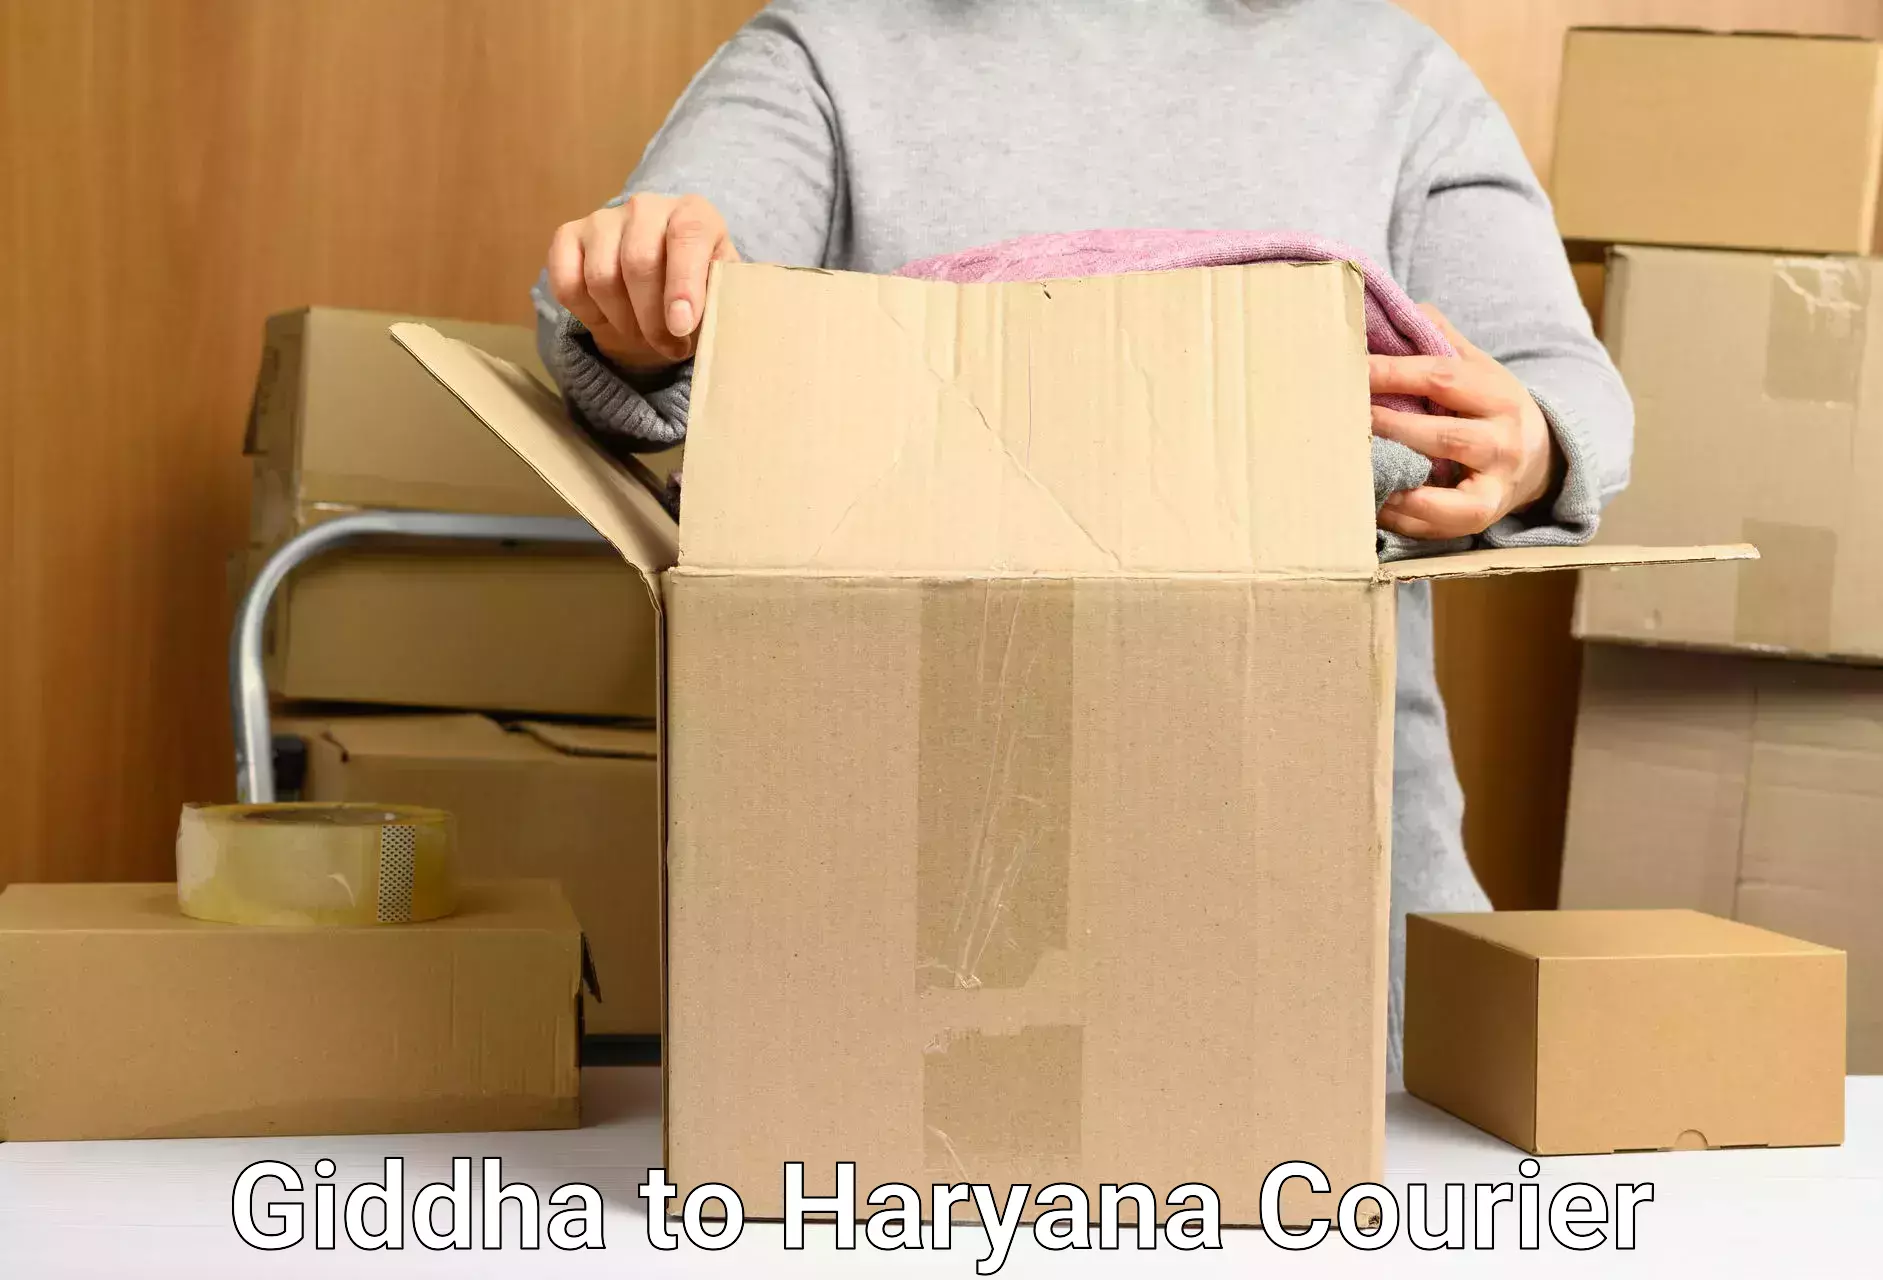 Seamless shipping service Giddha to Narwana